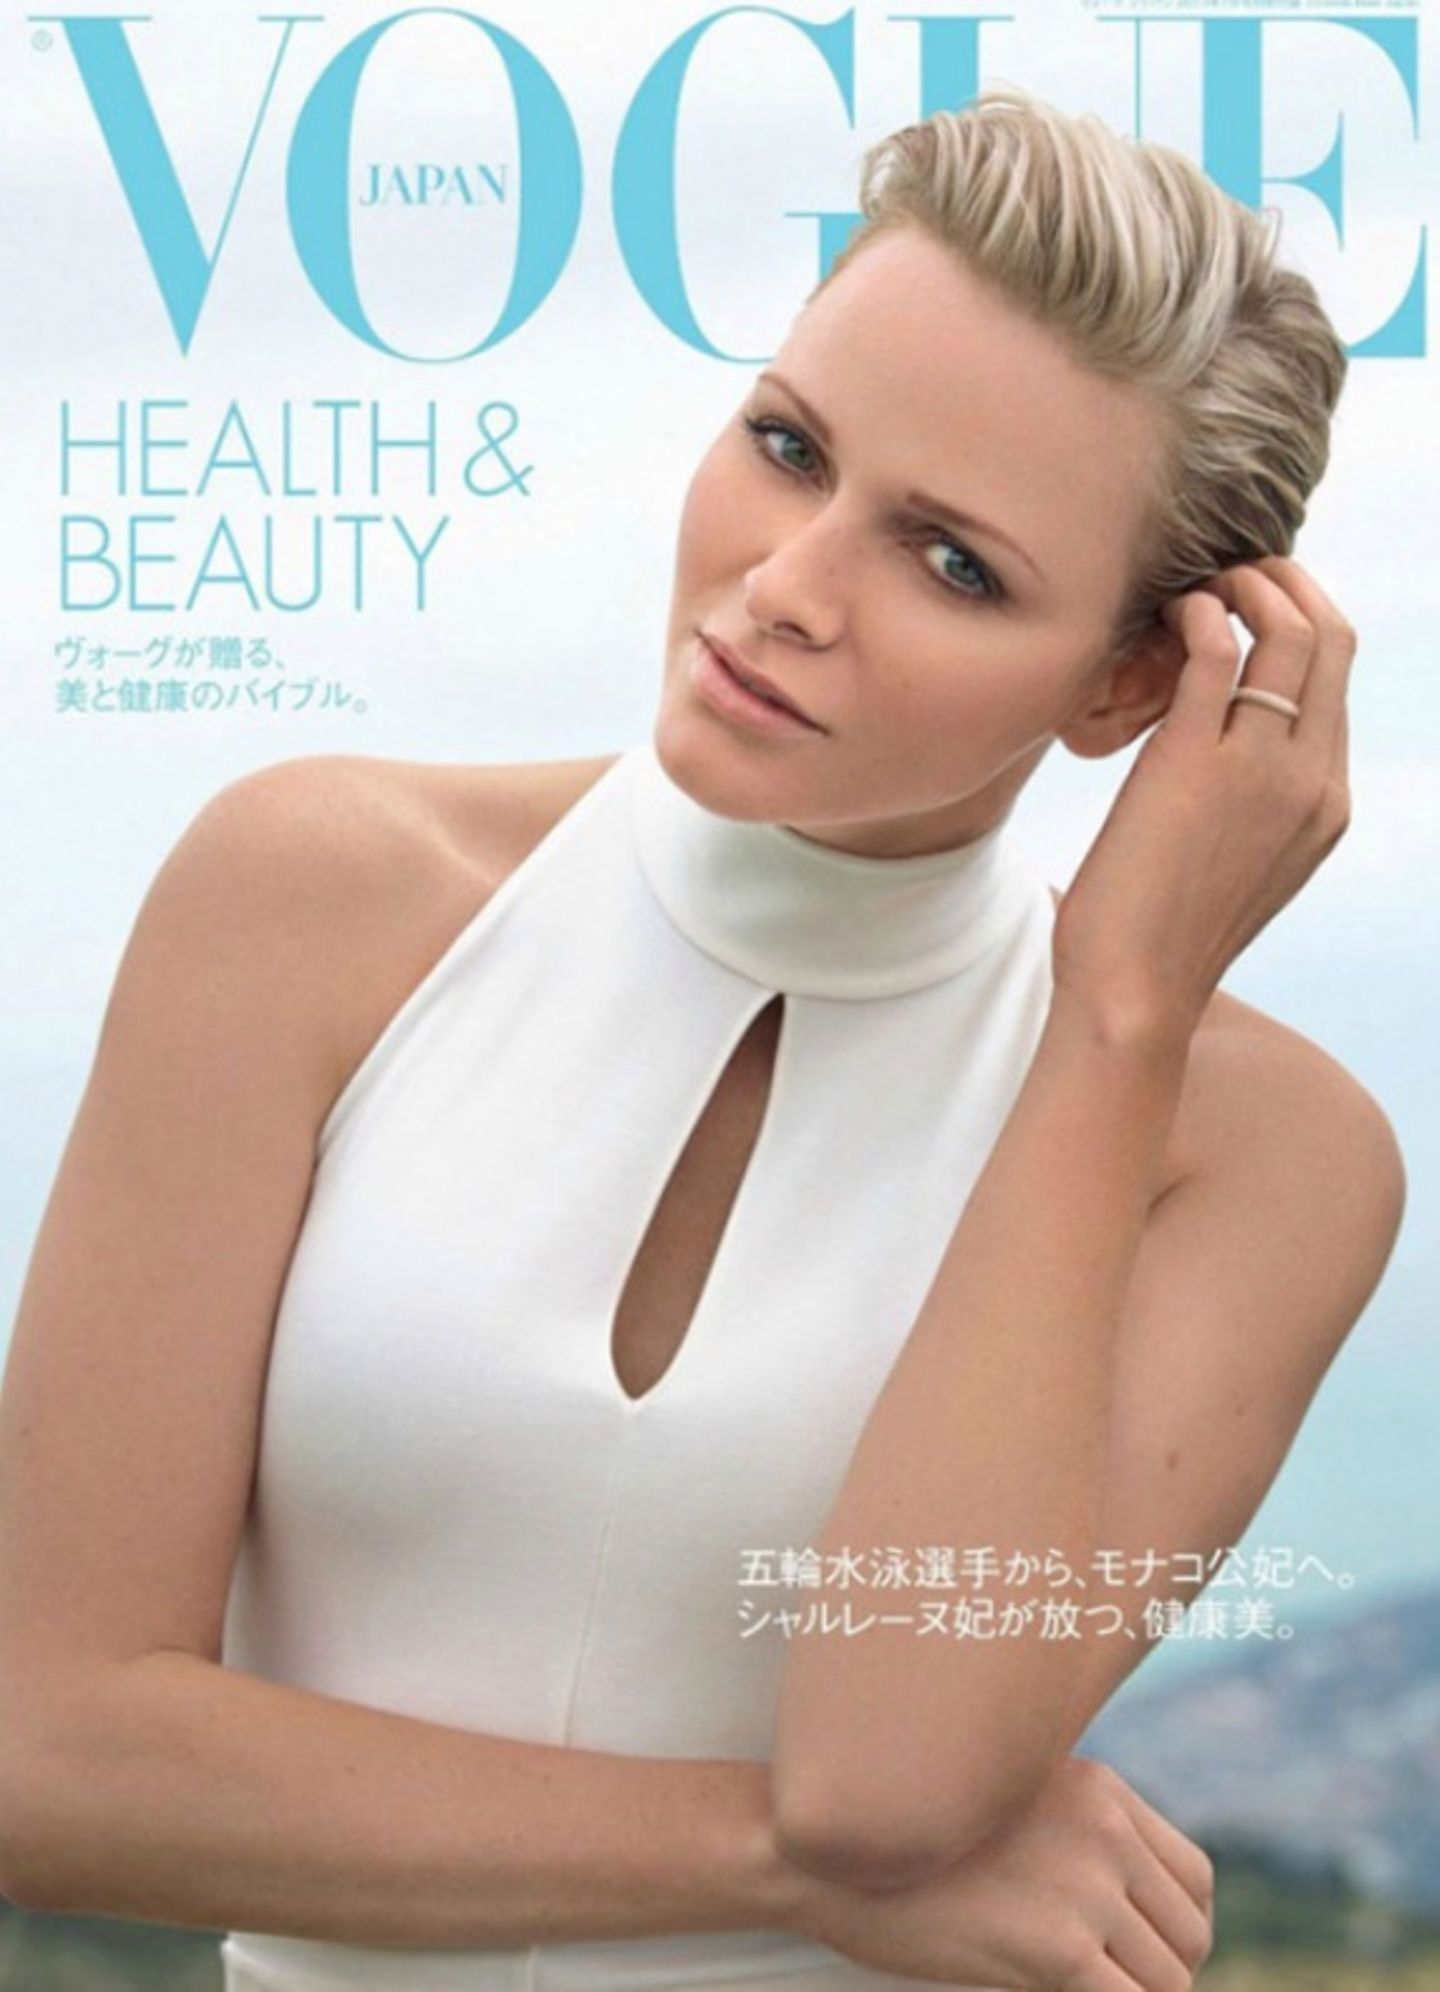 2013: Fürstin Charlène von Monaco ließ sich im Jahr 2013 für die japanische Vogue ablichten. 